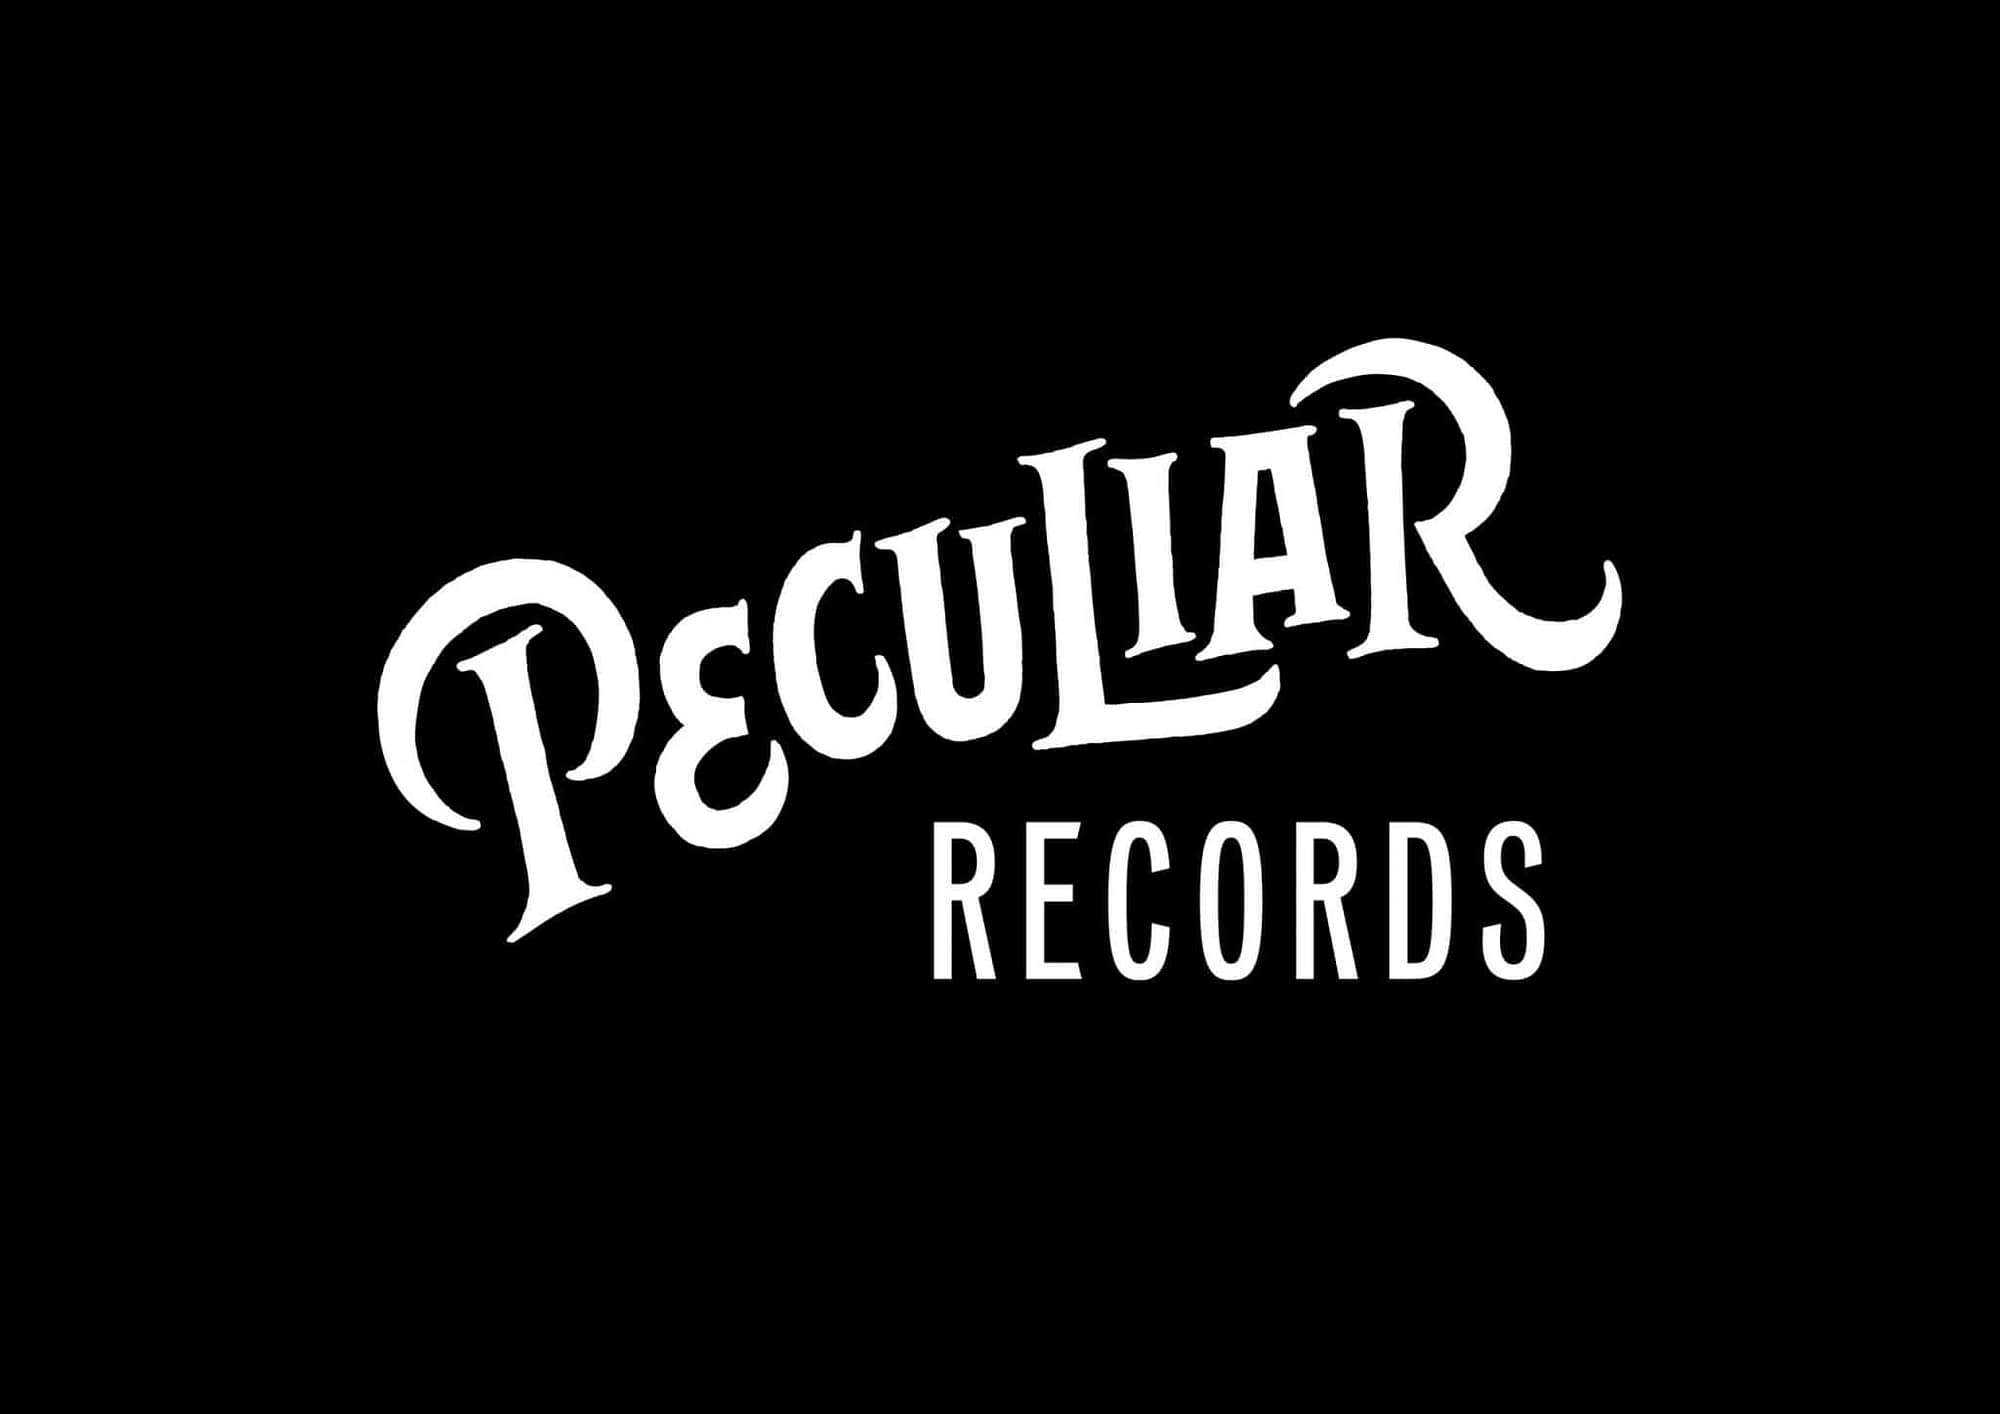 Peculiar Records logo